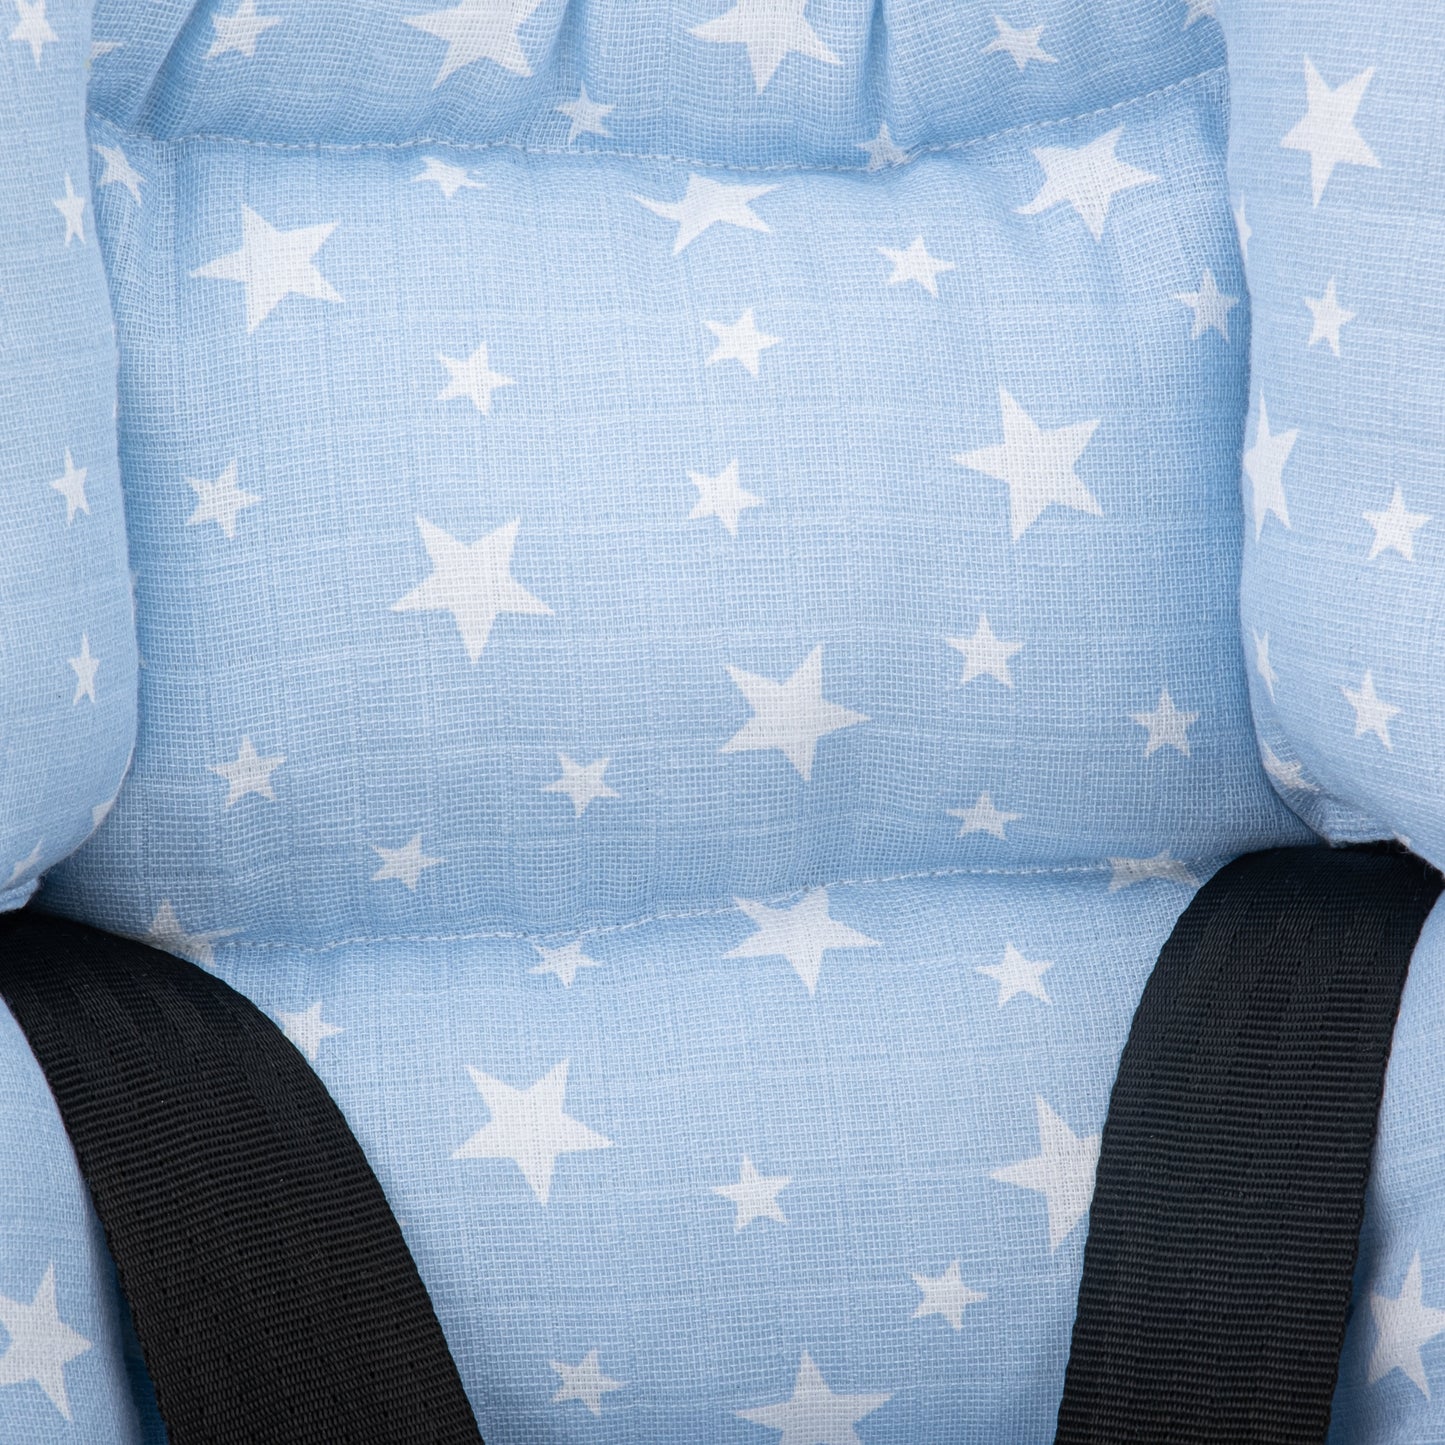 Stroller Cover Set - Double Side - White Honeycomb - Blue Little Stars